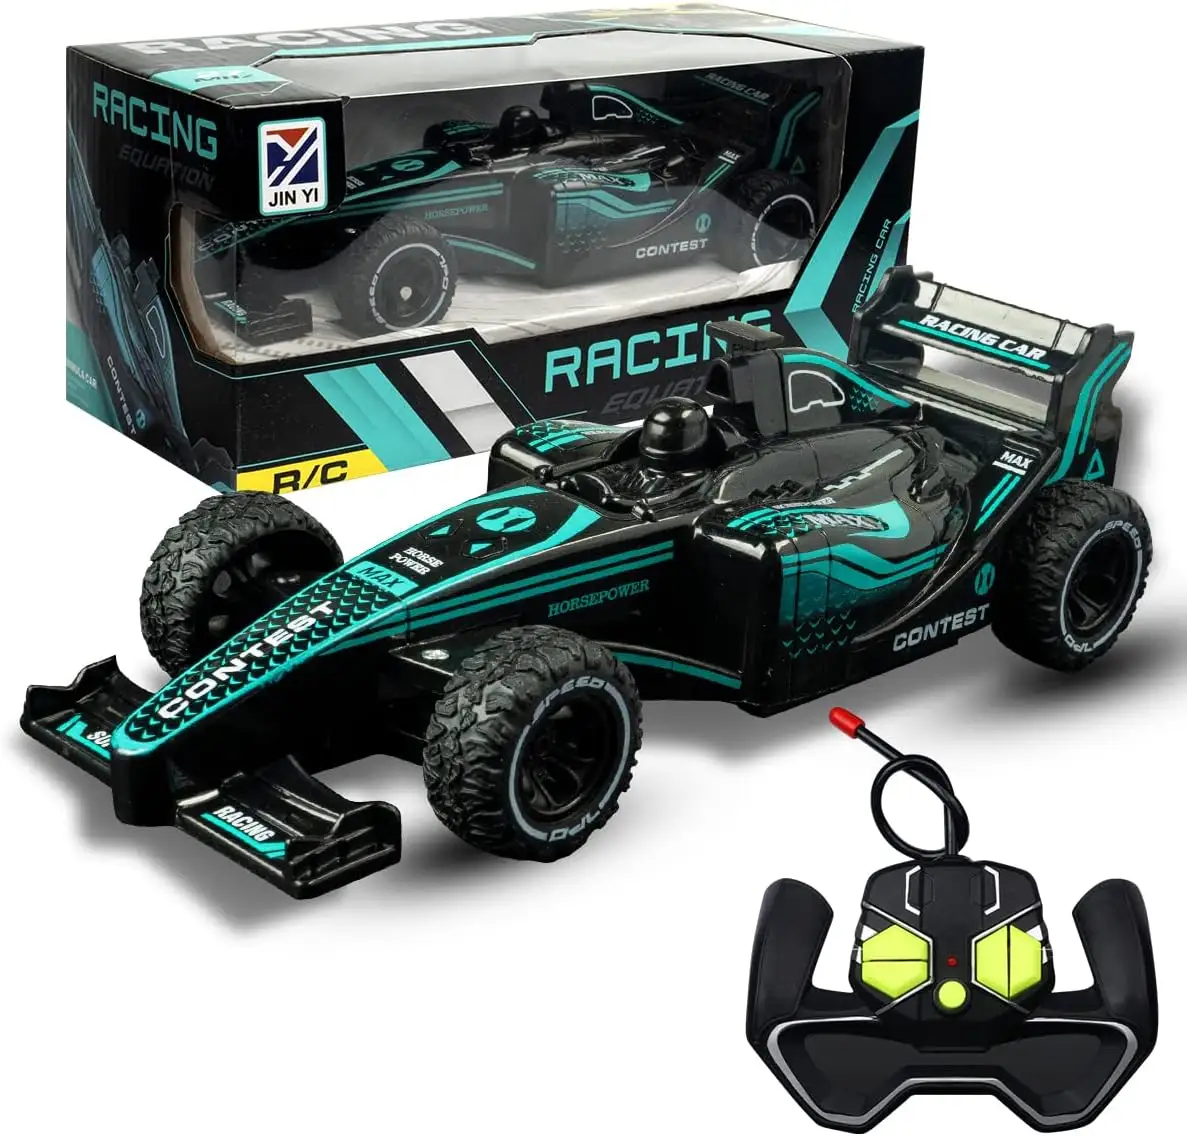 Op Afstand Bestuurbare Auto Kids Racing Speelgoed Weegschaal 1:20 27 Mhz Jongens & Meisjes Rc Auto Speelgoed Super Power Racing